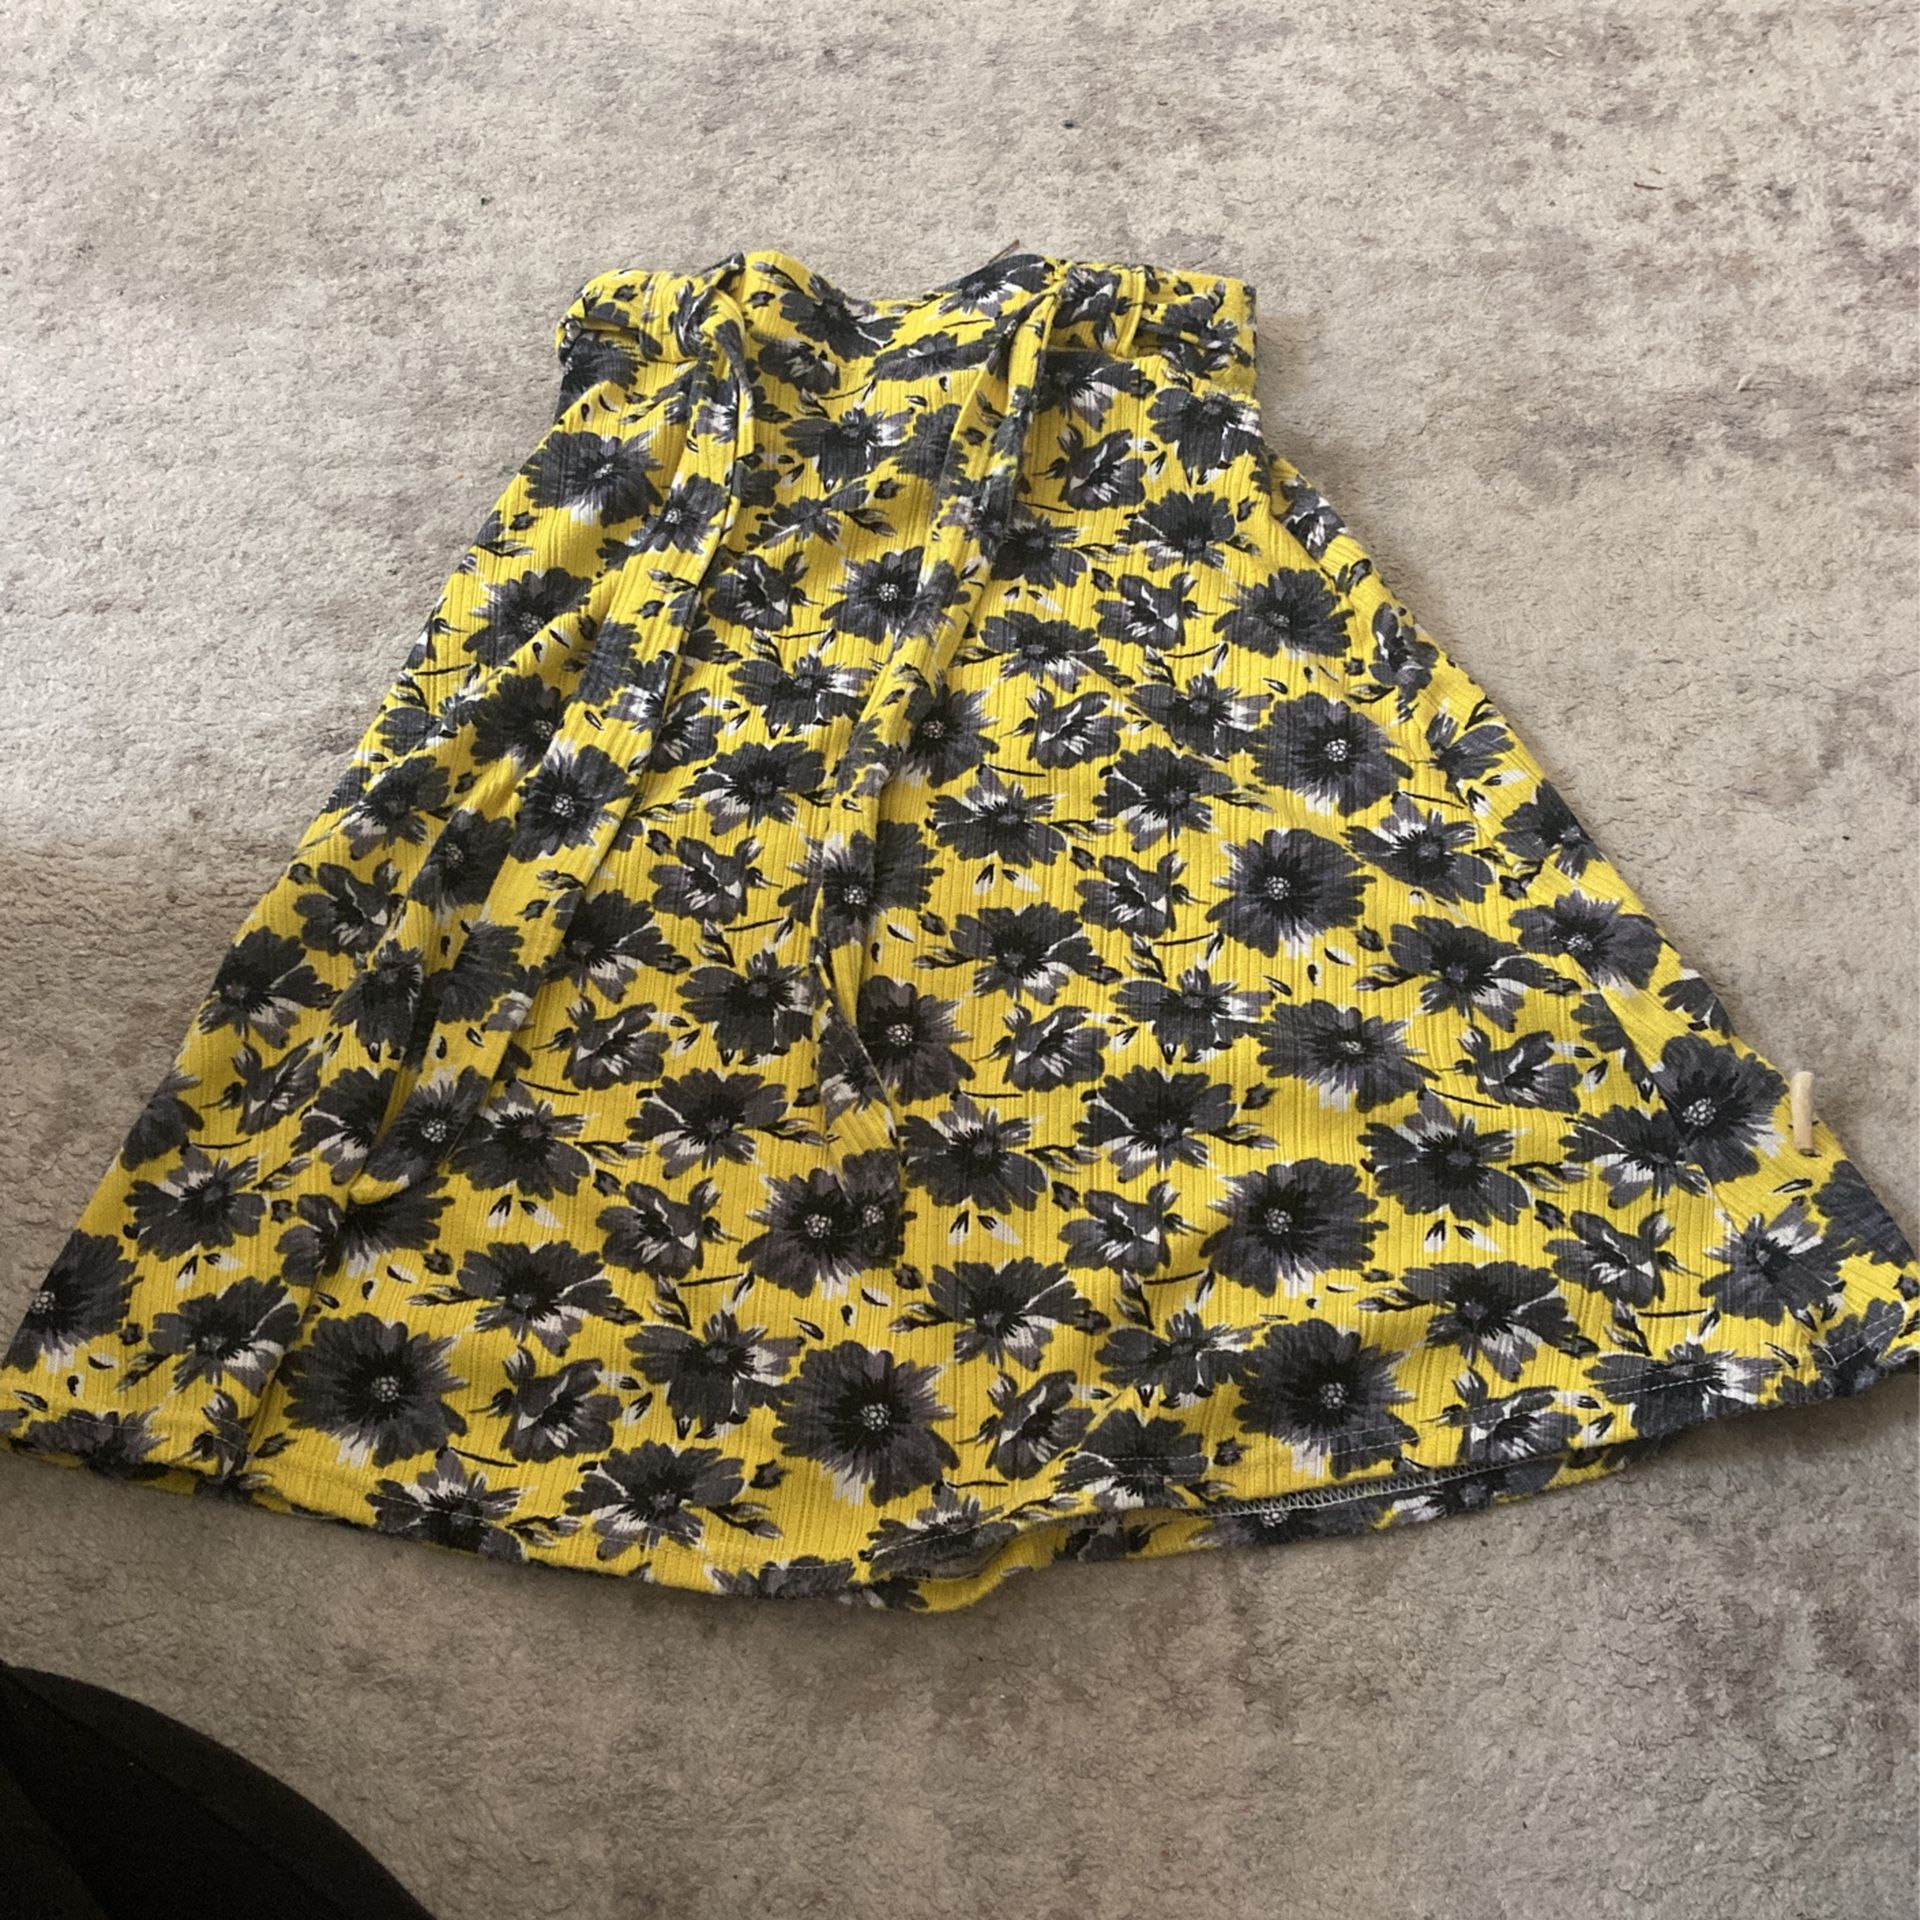 Women’s skirt